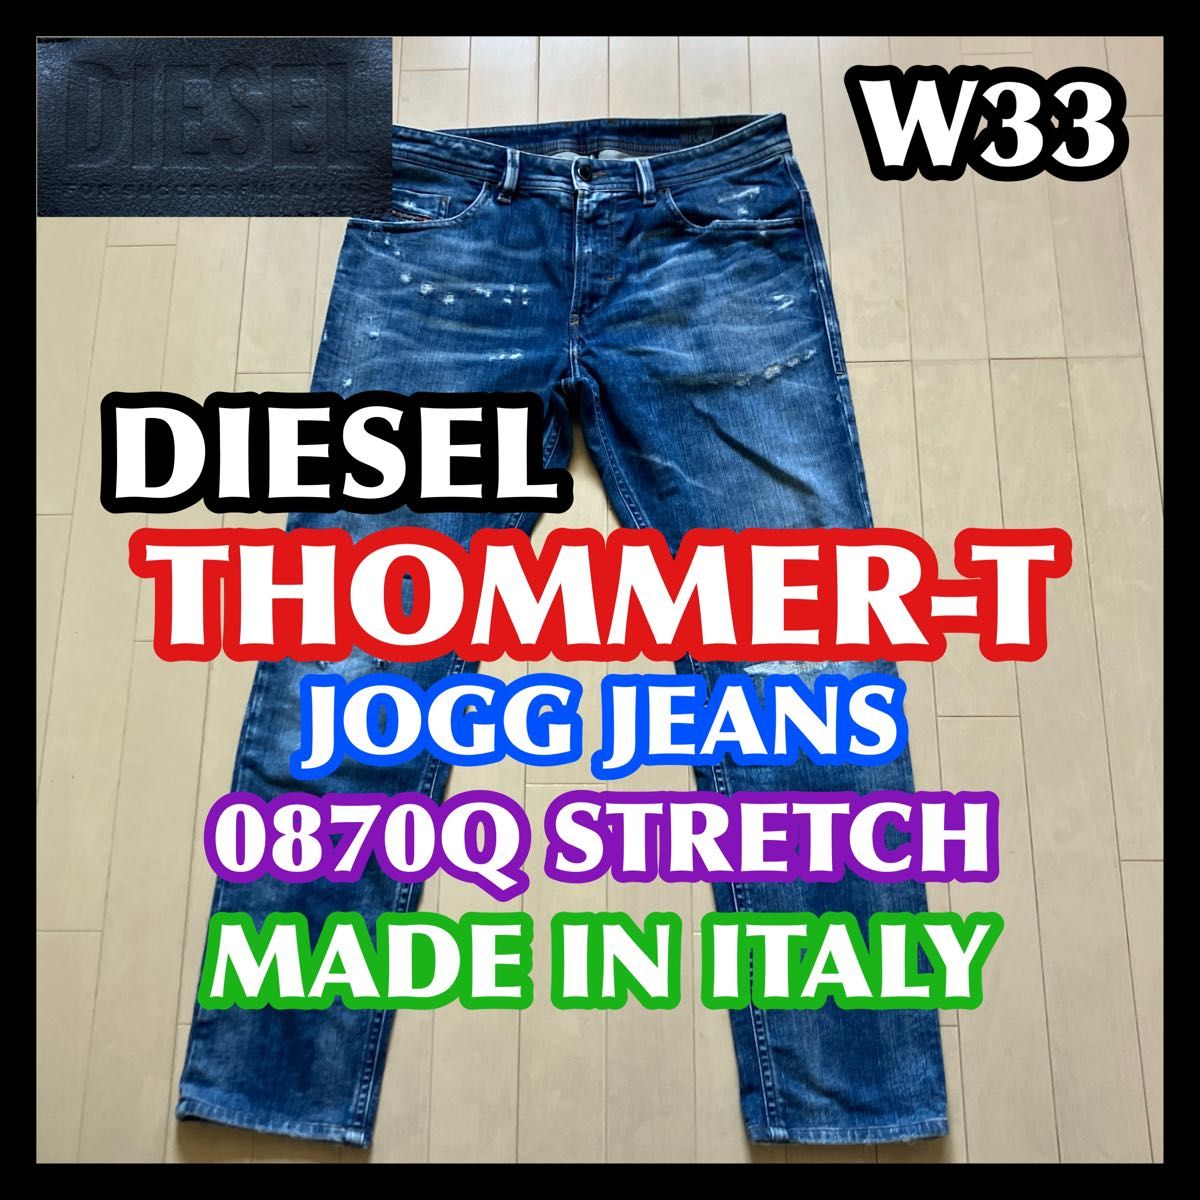 DIESEL THOMMER-T JOGGJEANS 0870Q W33 ディーゼル ソマー ジョグジーンズ ダメージ加工 トマー